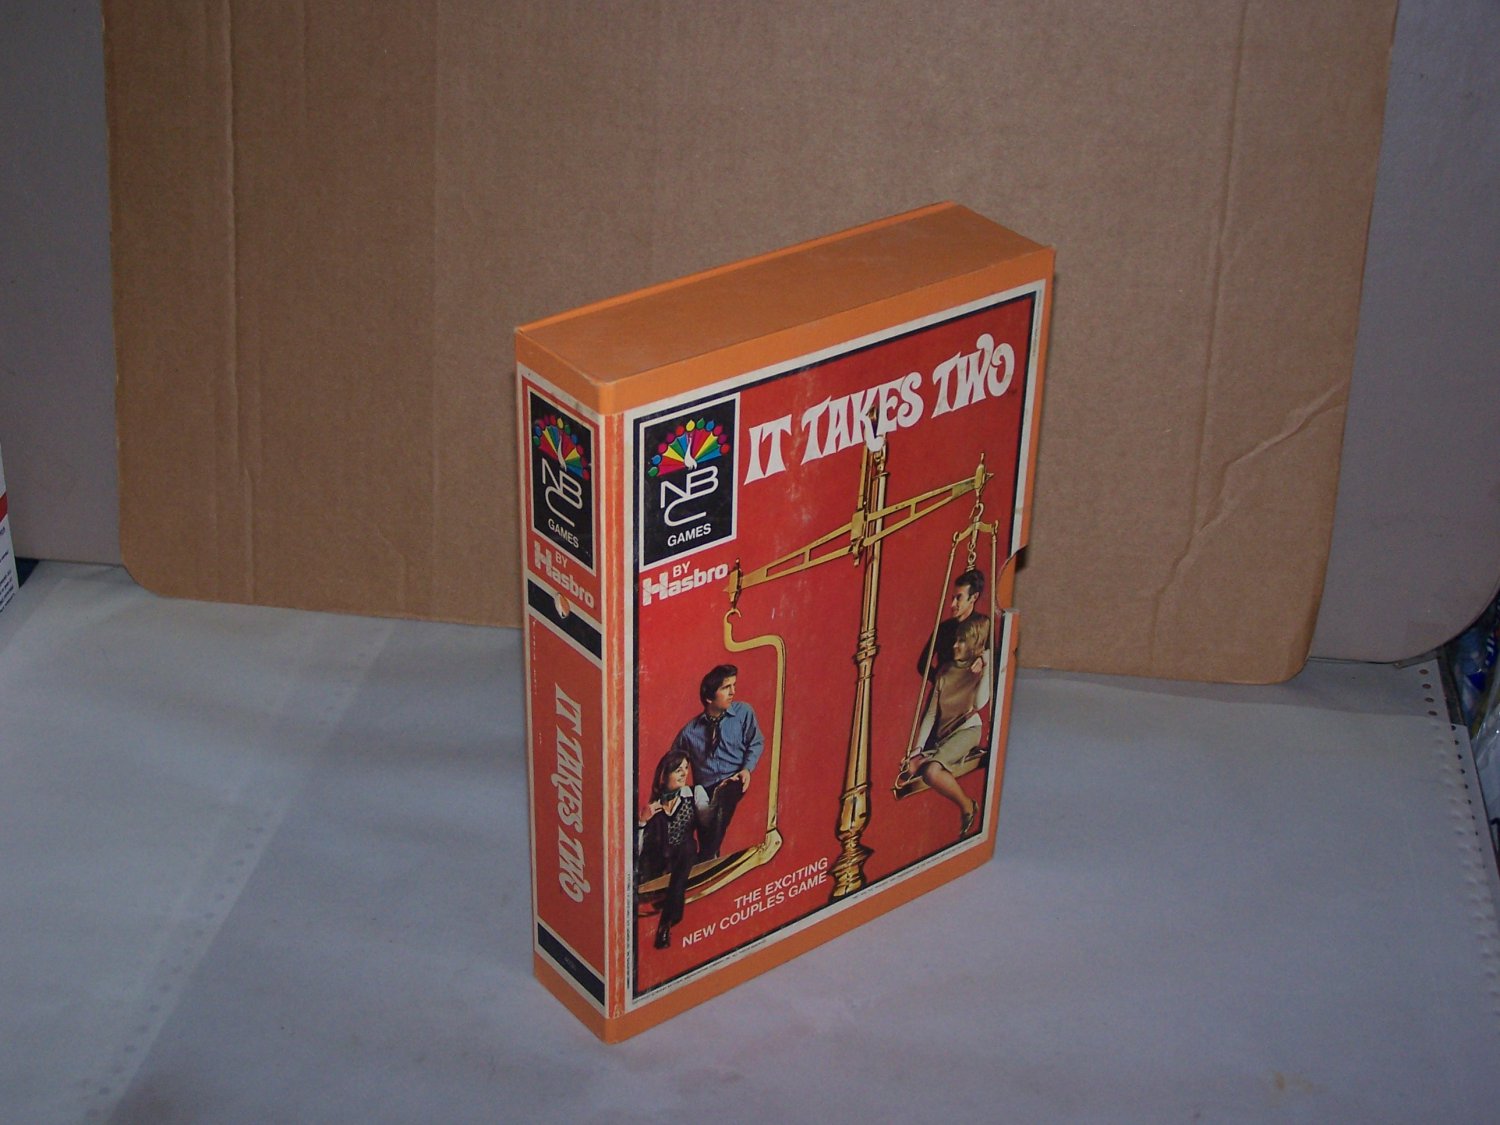 It Takes Two Game 1970 Nbc Hasbro Games Bookshelf